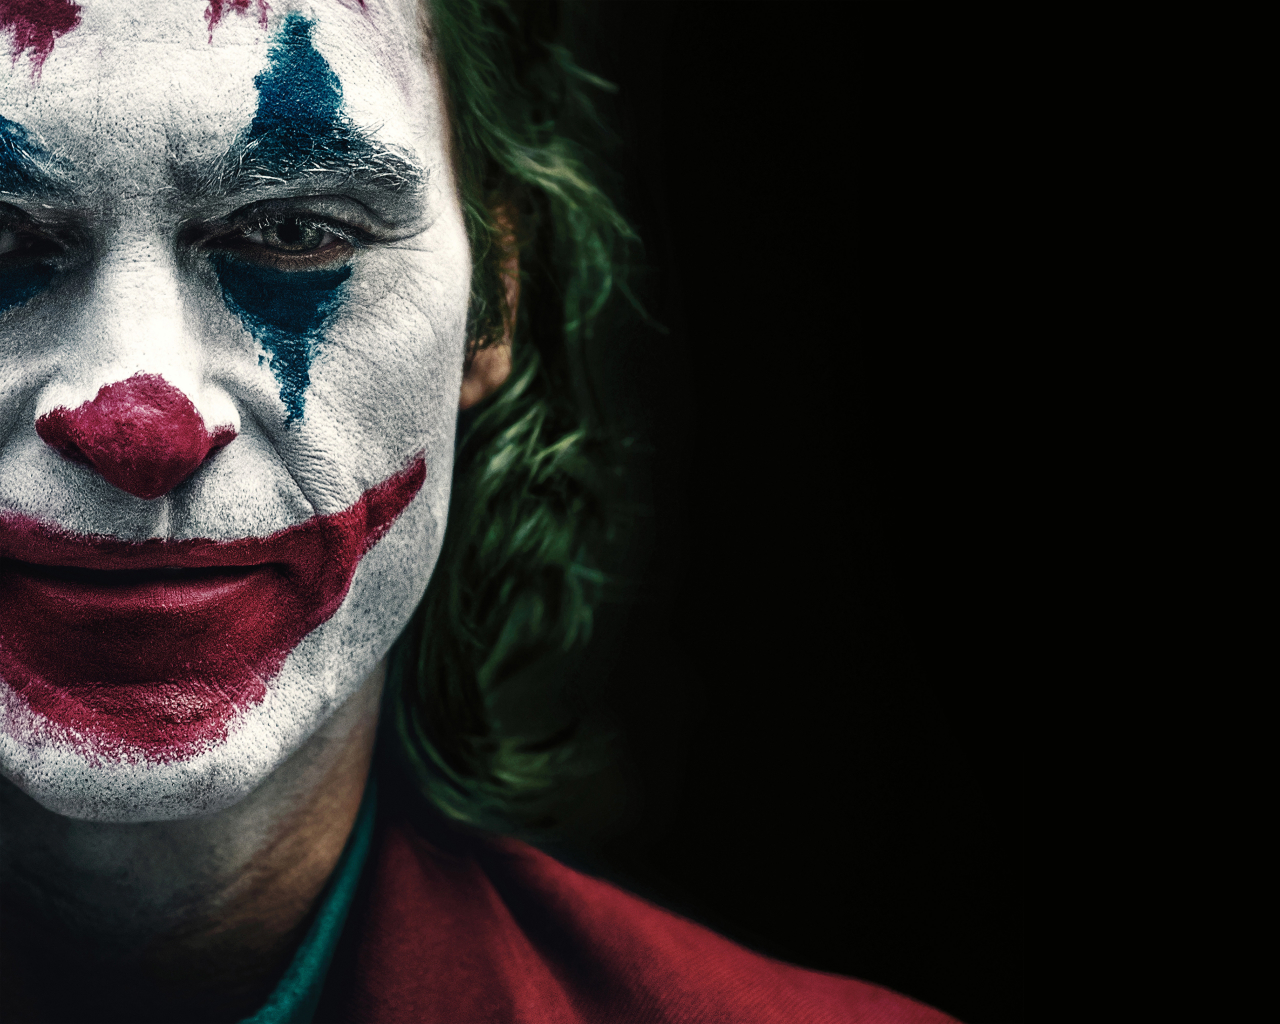 Joaquin Phoenix Joker Face - 1280x1024 Wallpaper 